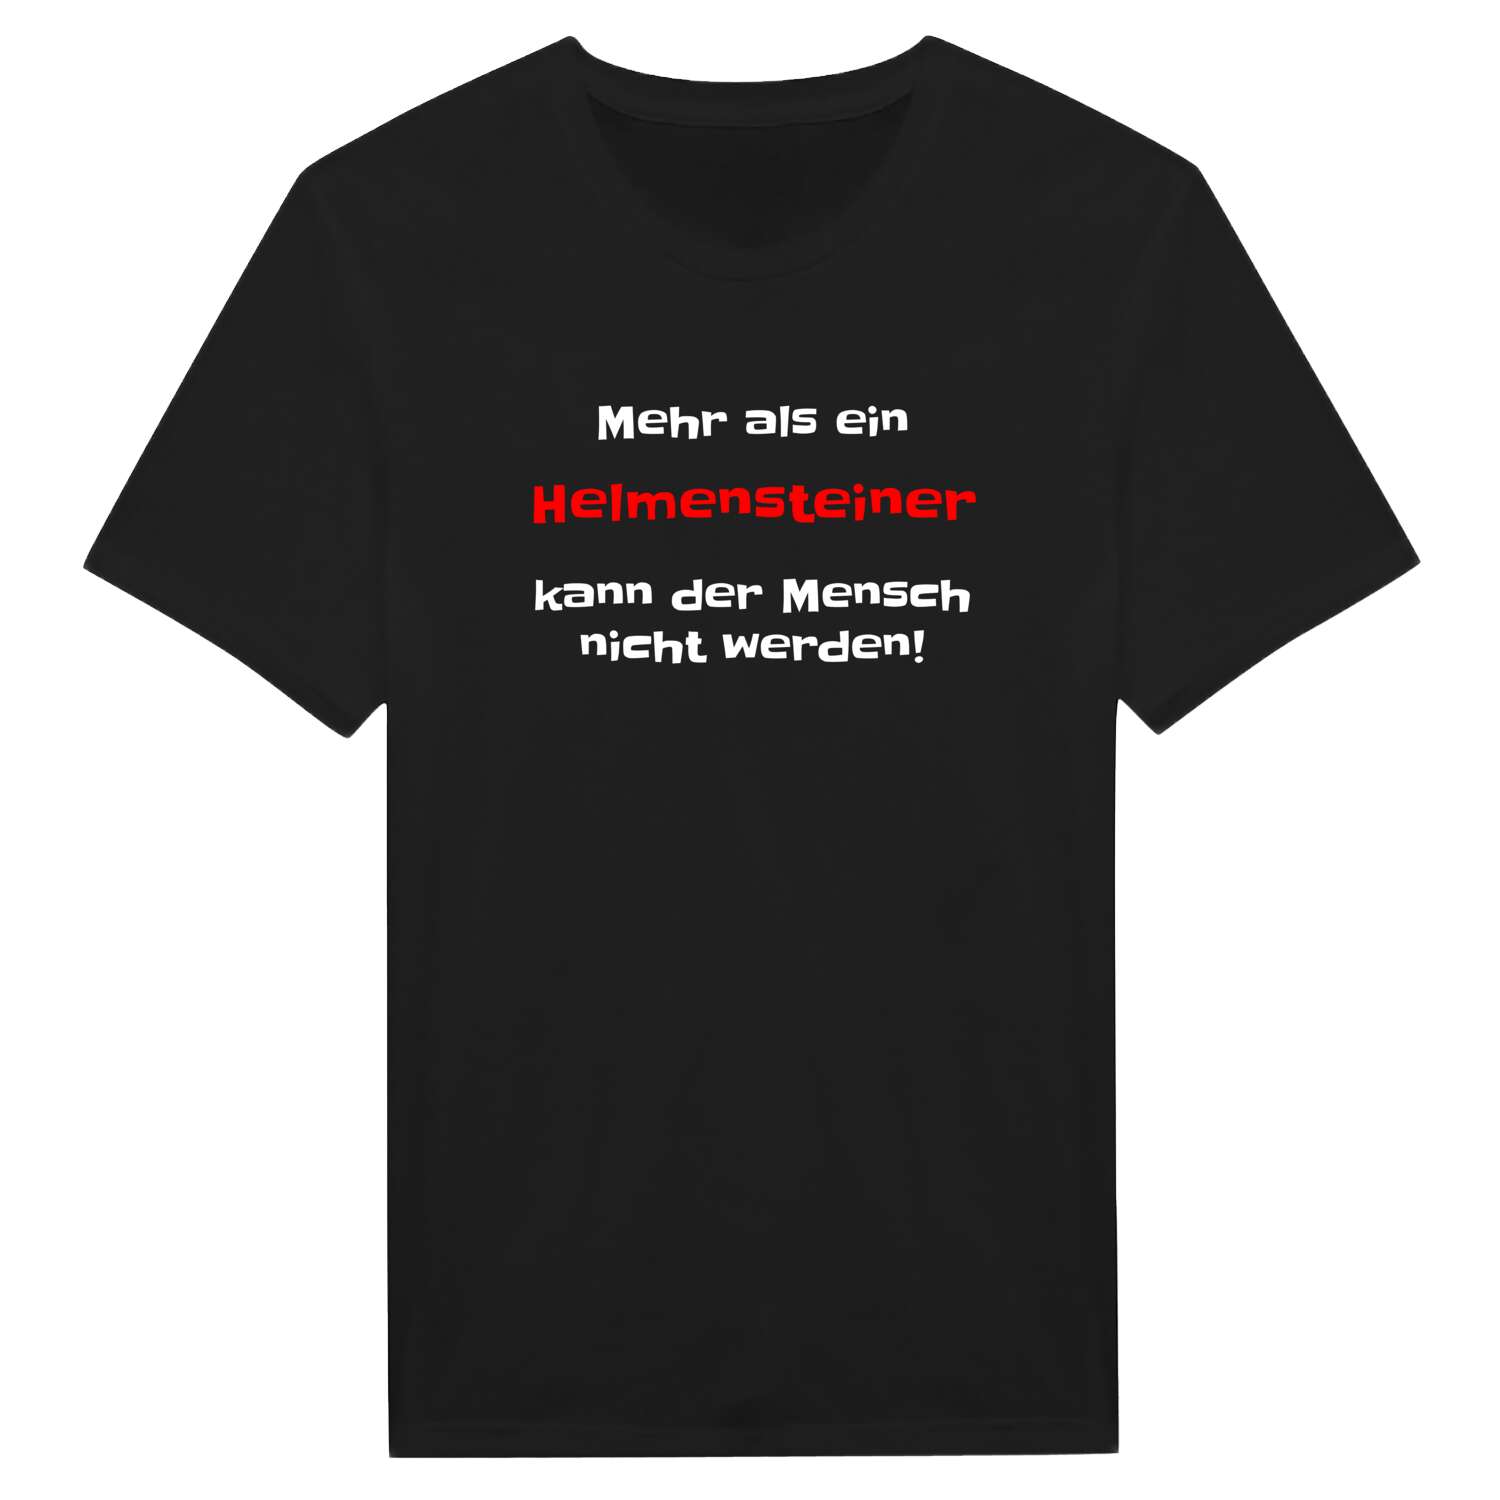 Helmenstein T-Shirt »Mehr als ein«